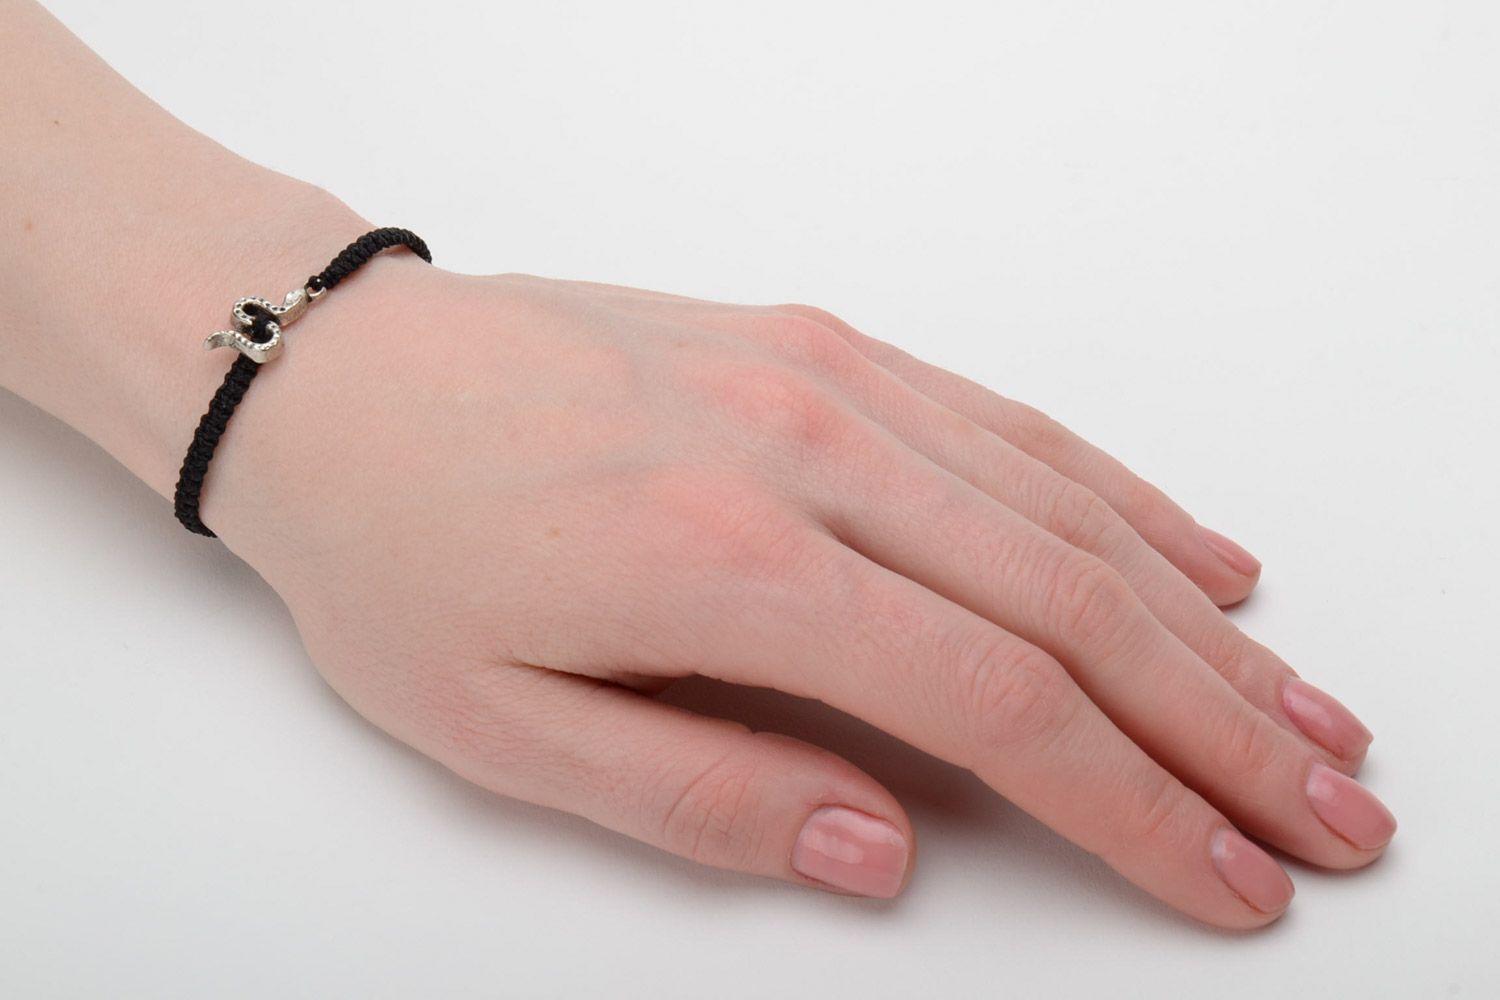 Handmade black macrame woven bracelet with metal snake charm for women photo 2